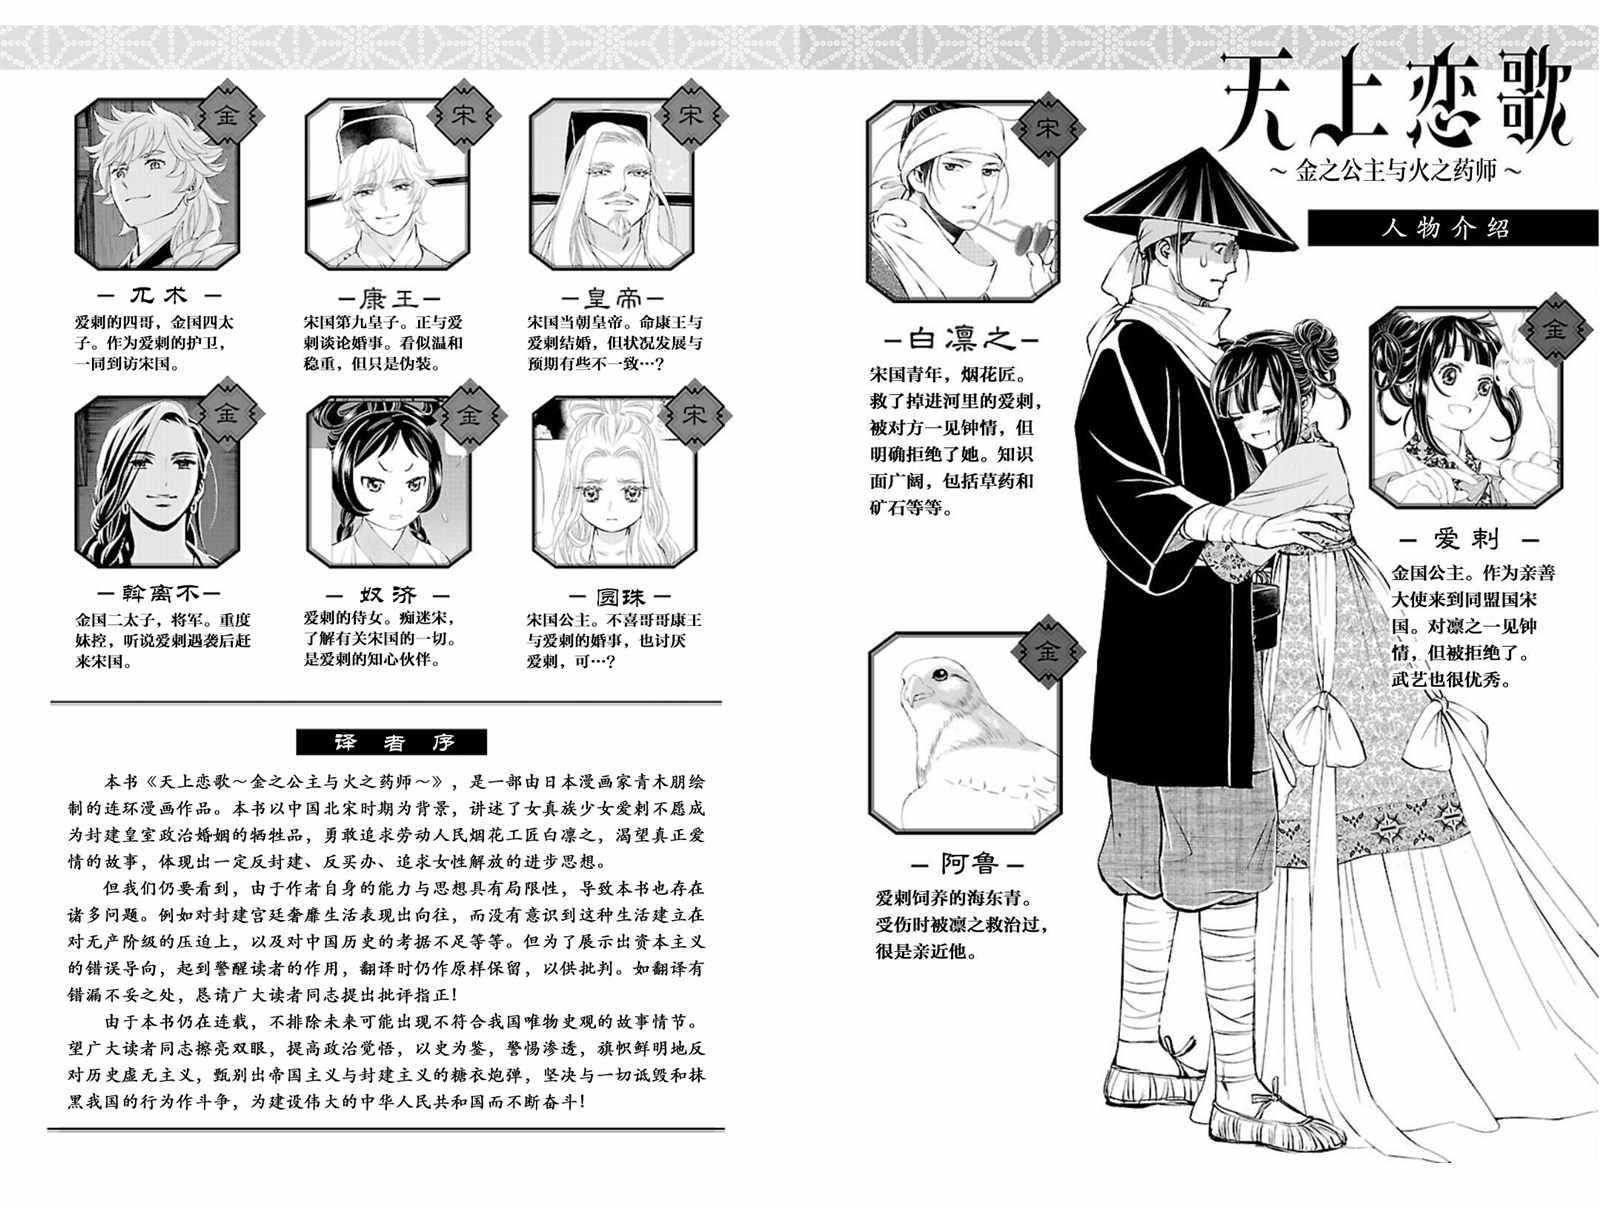 天上恋歌~金之公主与火之药师~漫画,第9话2图